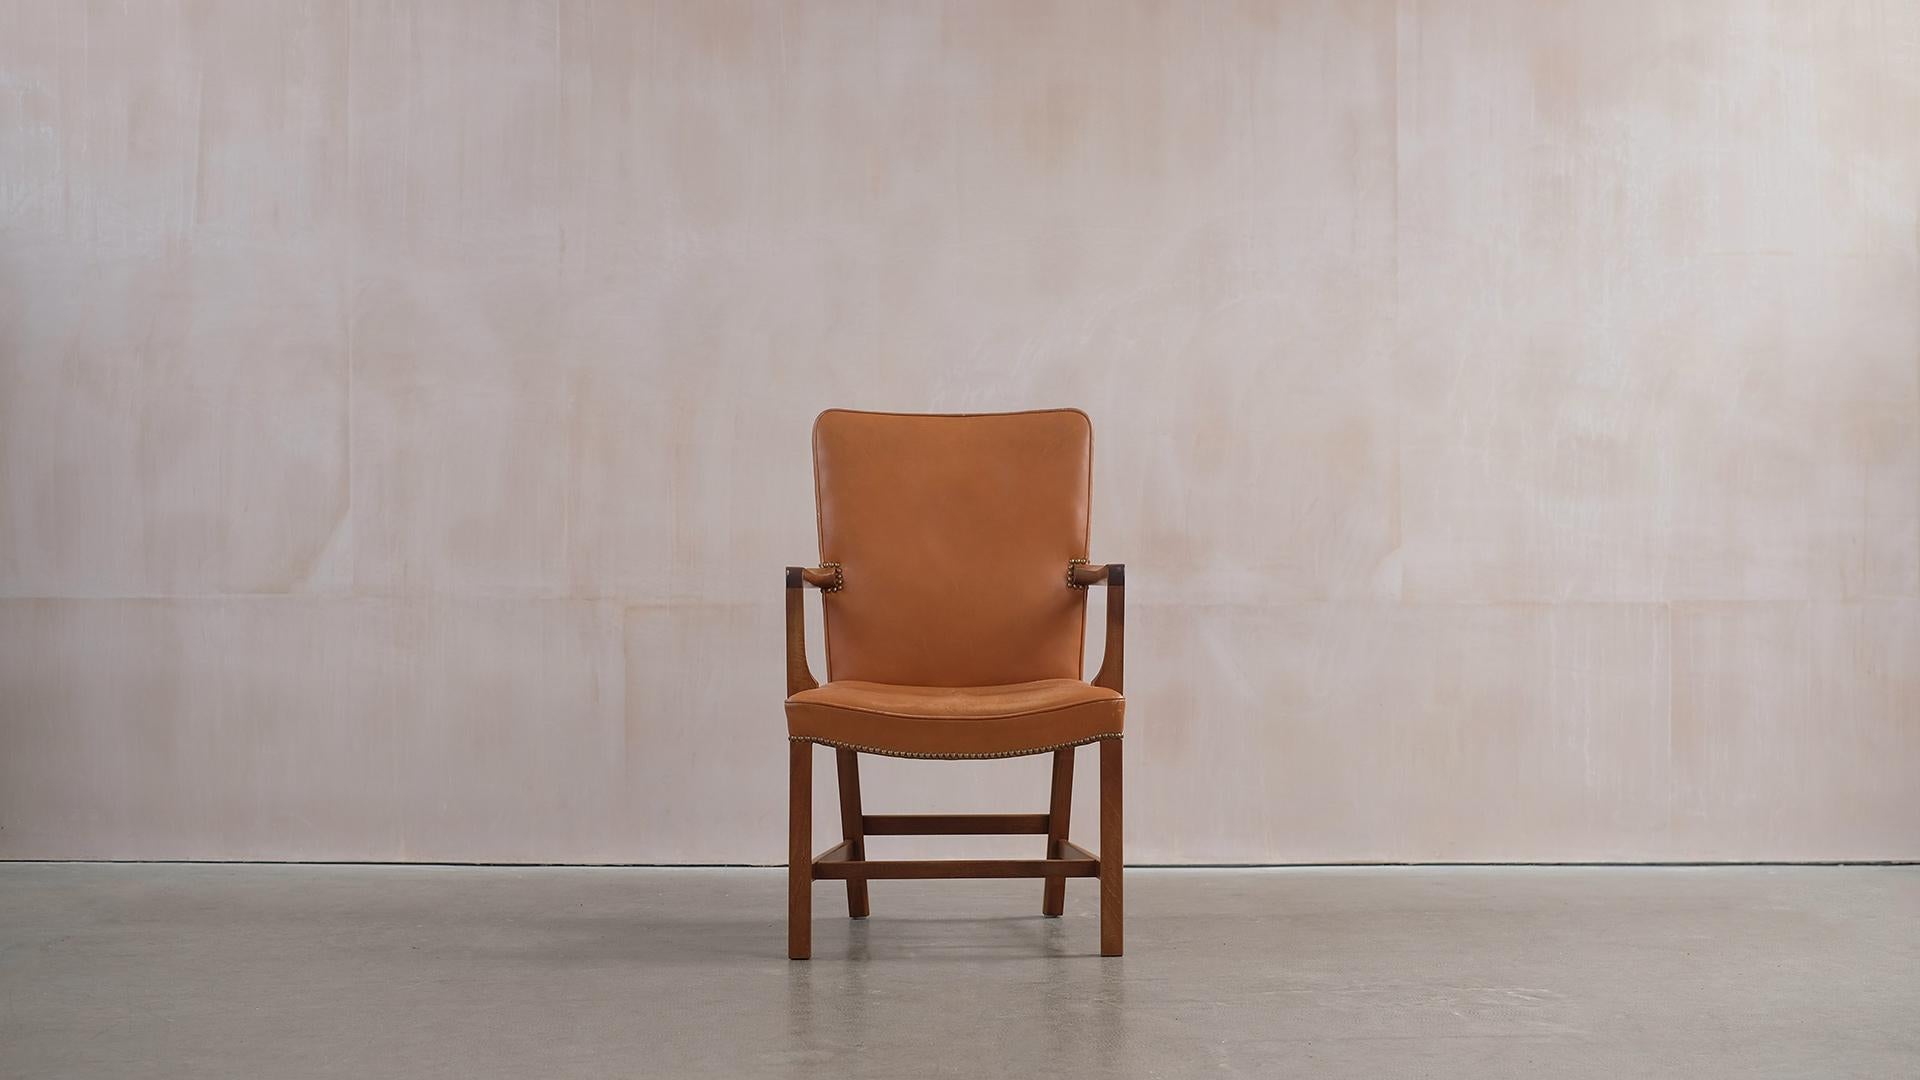 Magnifique fauteuil Norrevold conçu par Kaare Klint en 1939 pour le maître ébéniste Rud Rasmussen, Copenhague. Cet exemplaire est en bel acajou et cuir patiné de couleur fauve. Chaise classique super confortable et élégante.  
